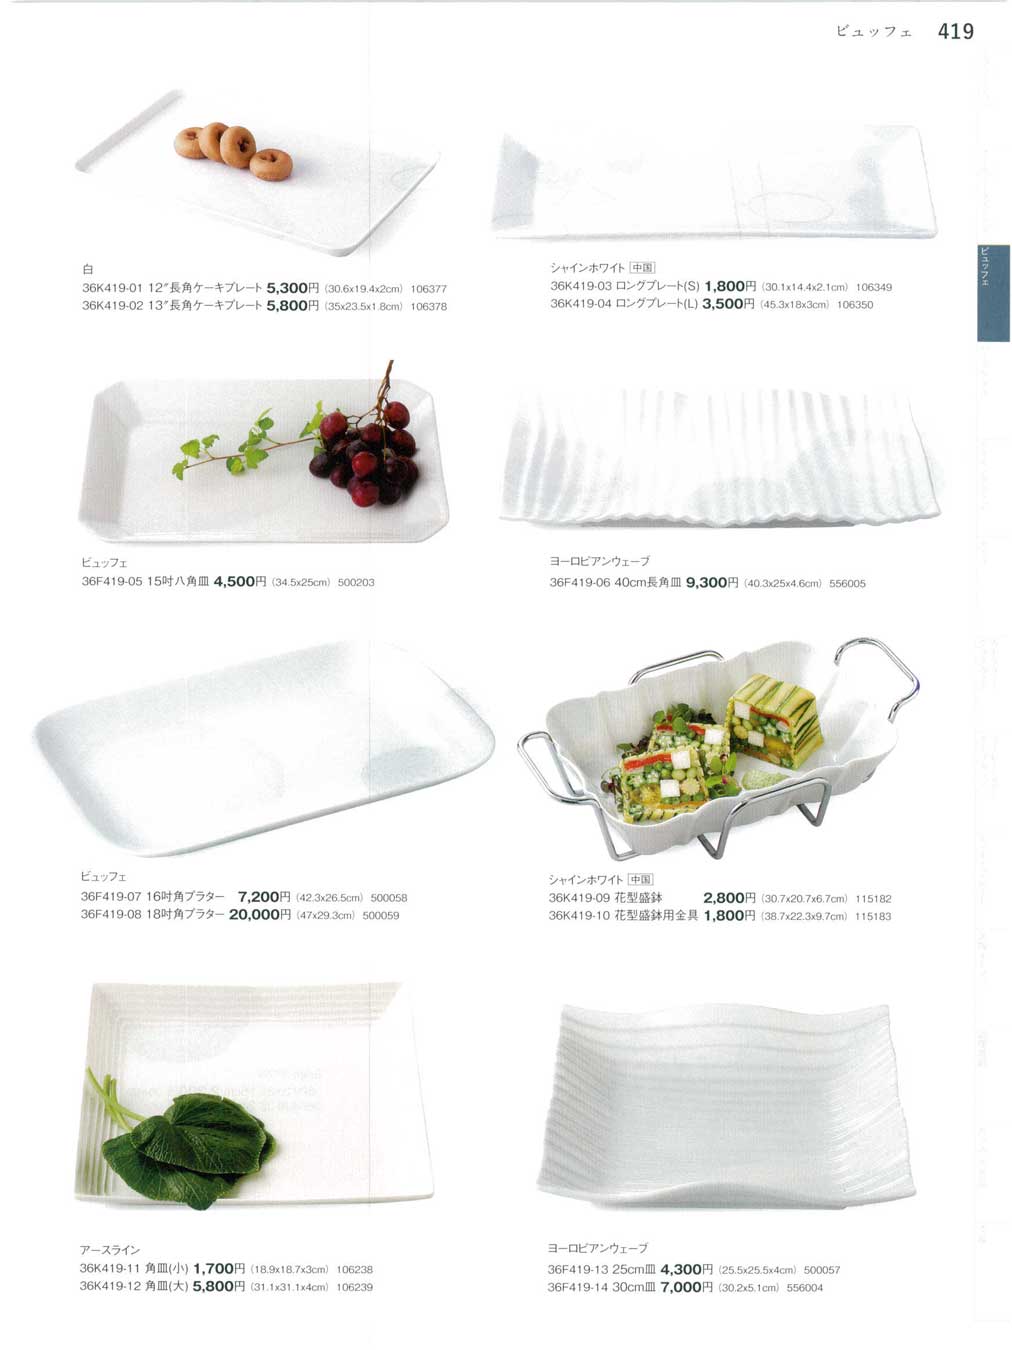 食器 ビュッフェTableware for Buffet, Plate, Platter, Bowl まごころ